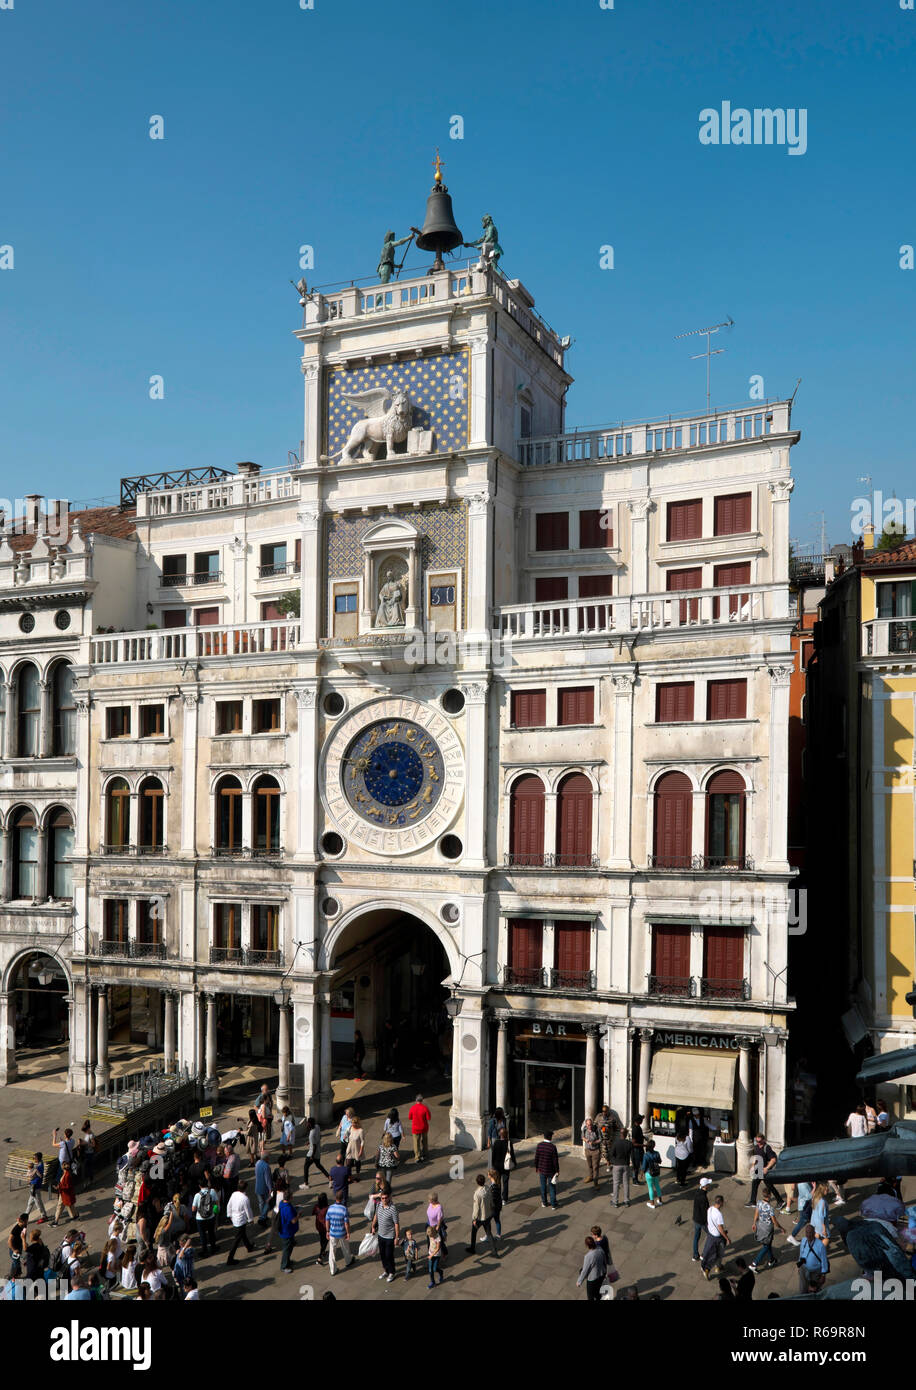 Clock Tower, Piazza San Marco, Venice, Veneto, Italy Stock Photo